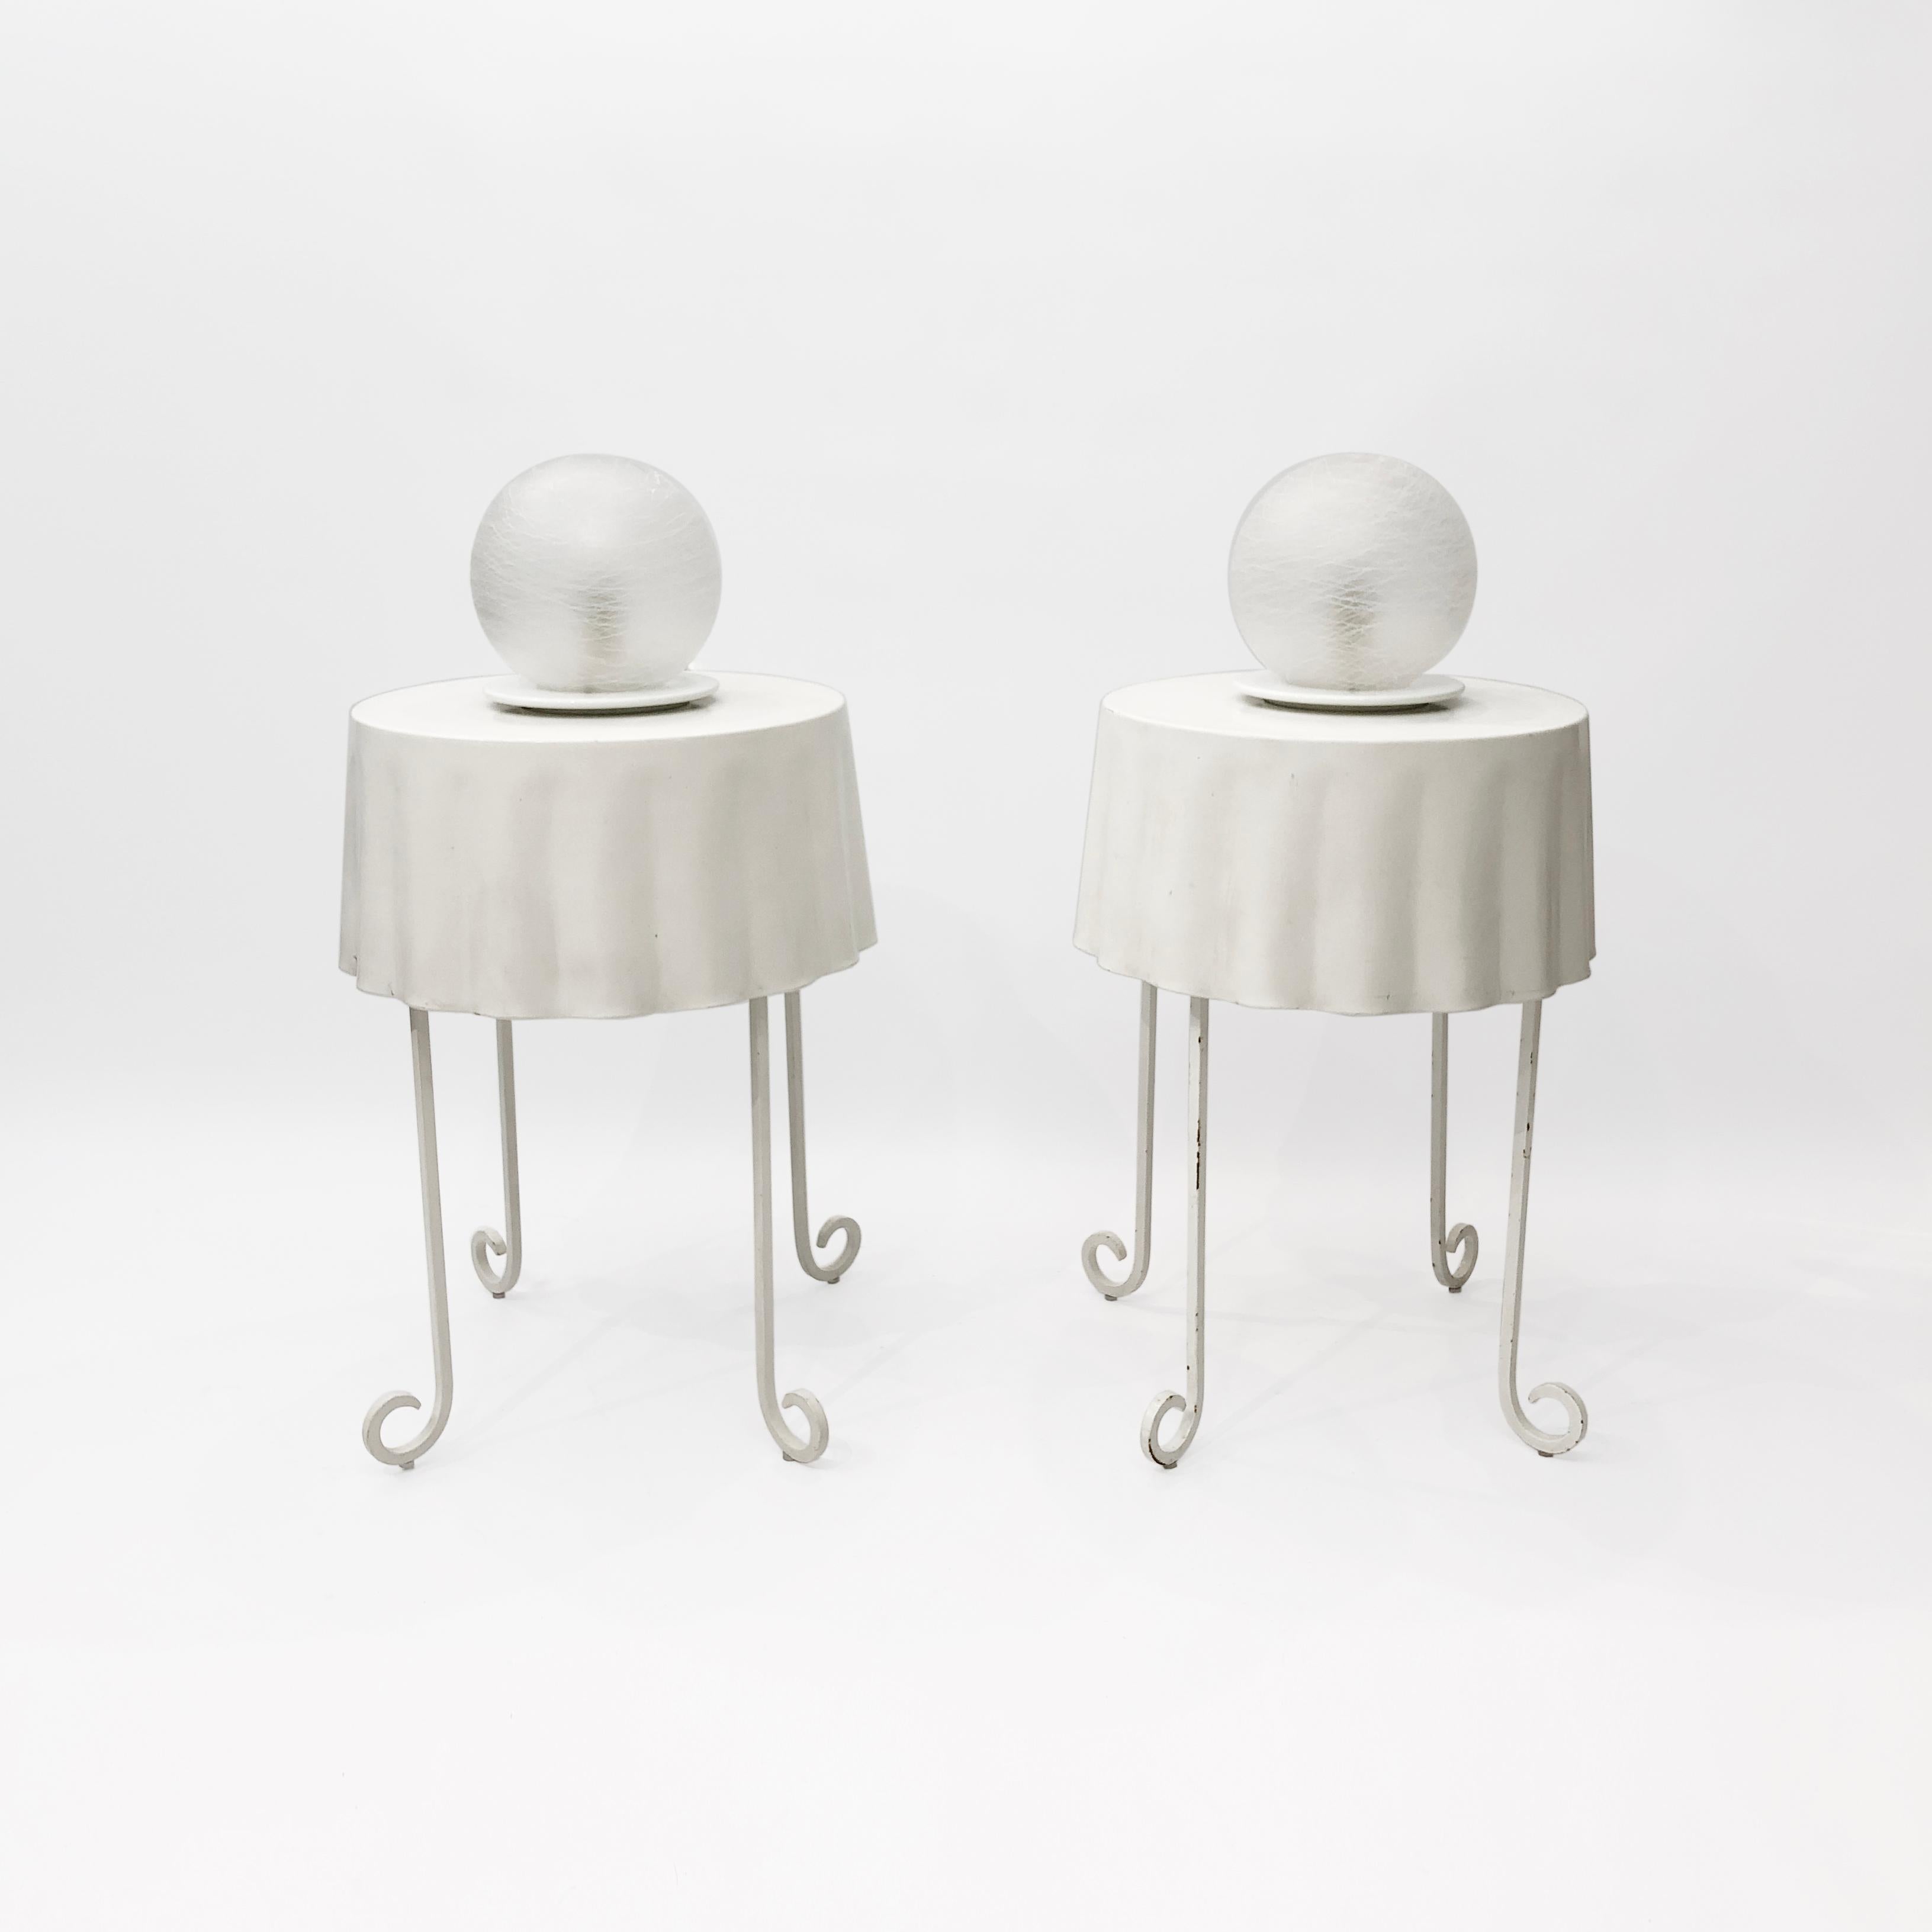 Ein Paar weiße, kugelförmige Murano-Glas-Tischlampen, die in den 1970er Jahren in Italien hergestellt wurden. Jede Leuchte besteht aus einer mattierten Glaskugel, die auf einem weiß pulverbeschichteten Metallsockel sitzt. Das Glas wurde mundgeblasen